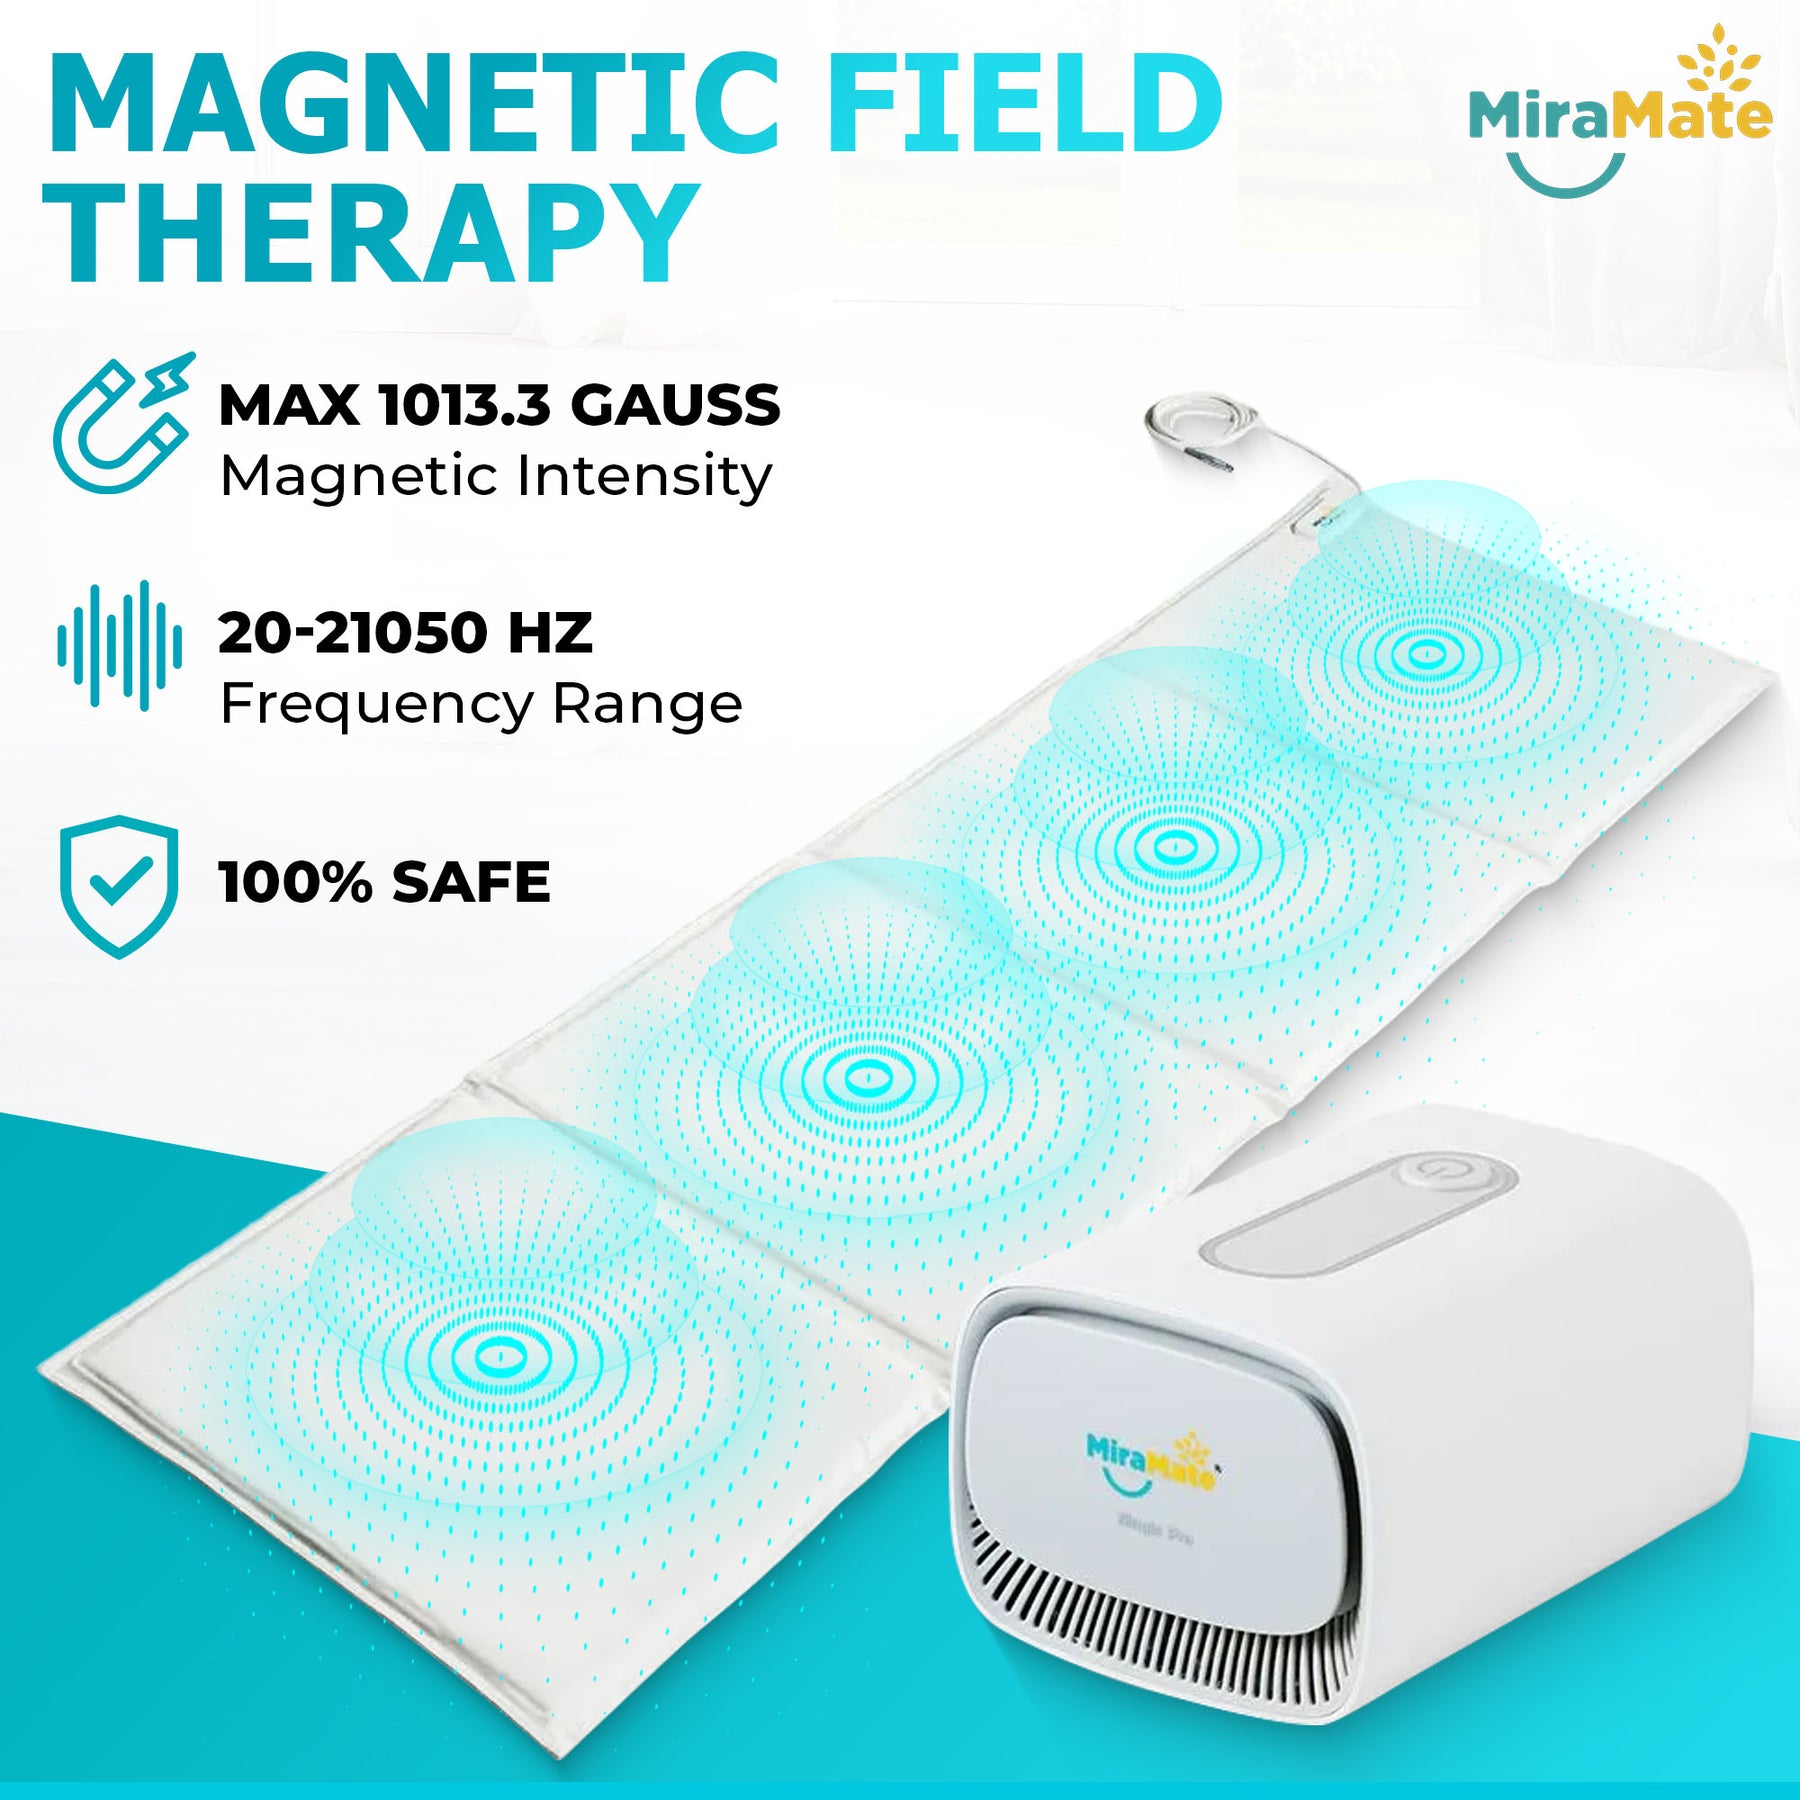 MiraMate Magic Pro Low Field Magnetic Stimulation Mat